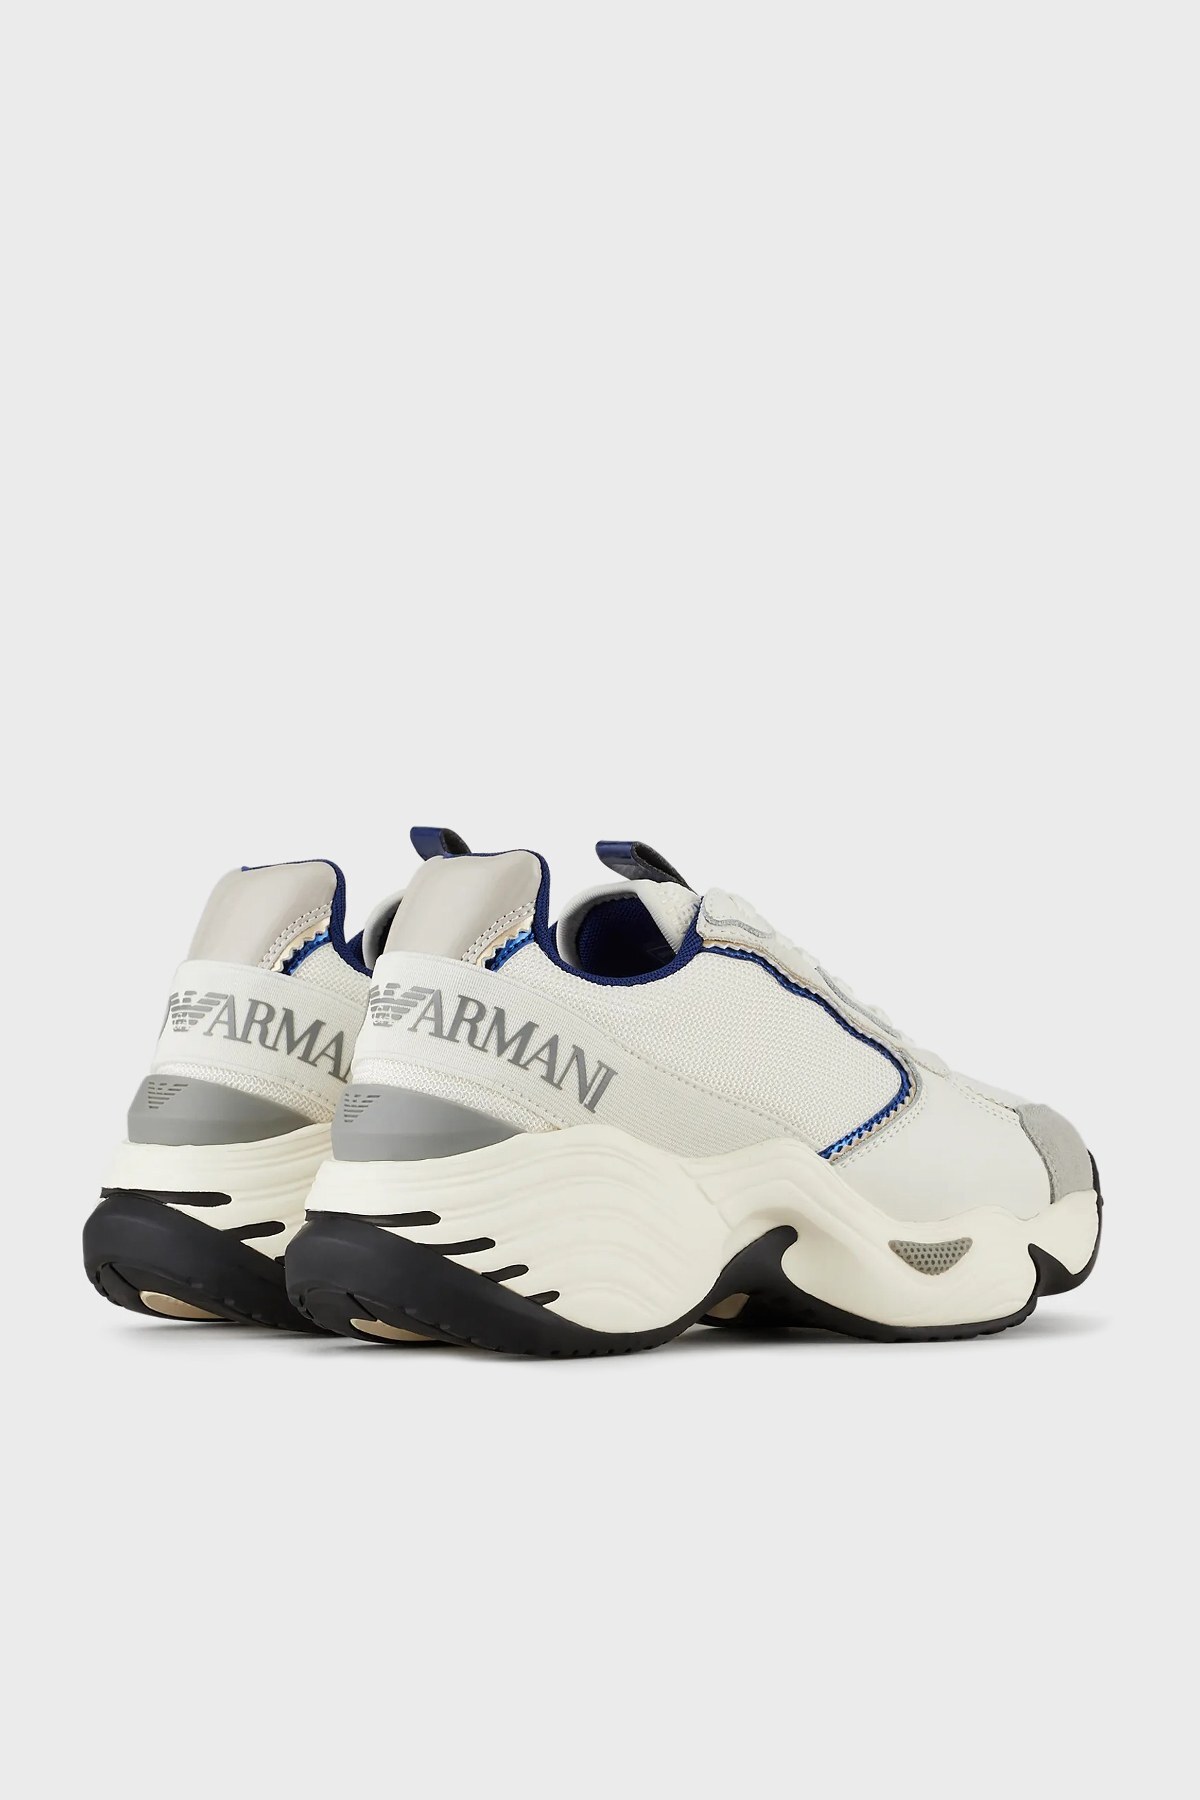 Emporio Armani Kalın Tabanlı Sneaker Bayan Ayakkabı X3X140 XM059 Q520 KREM-LACIVERT